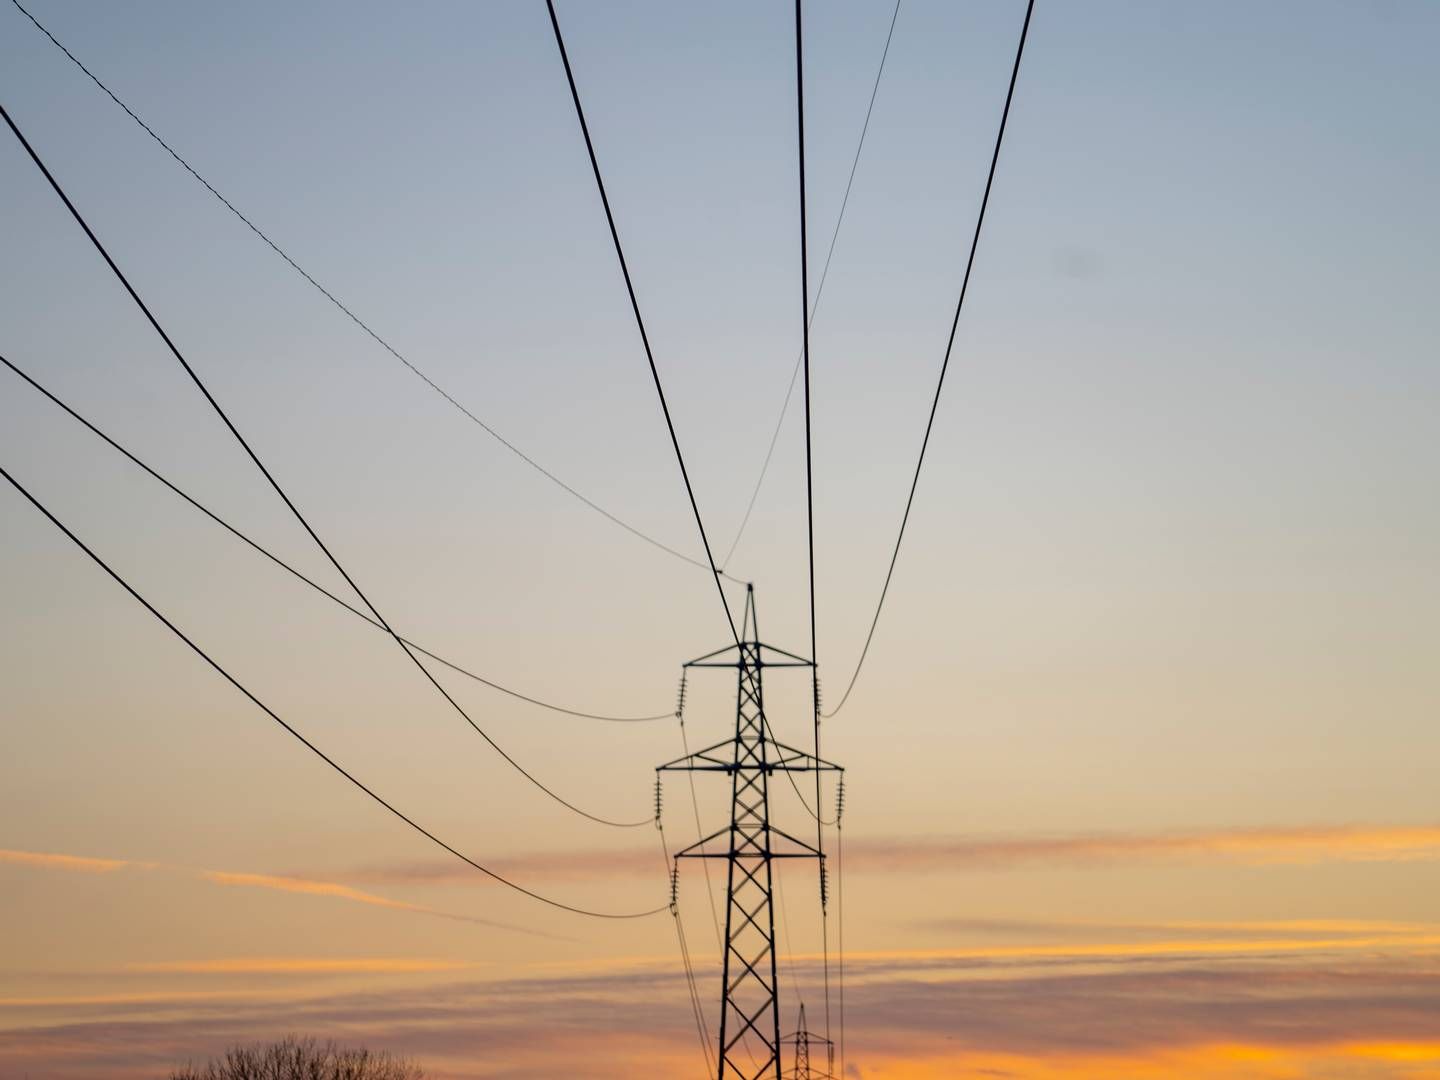 STRESSTEST: EU-kommisjonen ønsker å stressteste strømnettet for å beskytte kritisk energi-infrastruktur. | Foto: Marius Helge Larsen / NTB